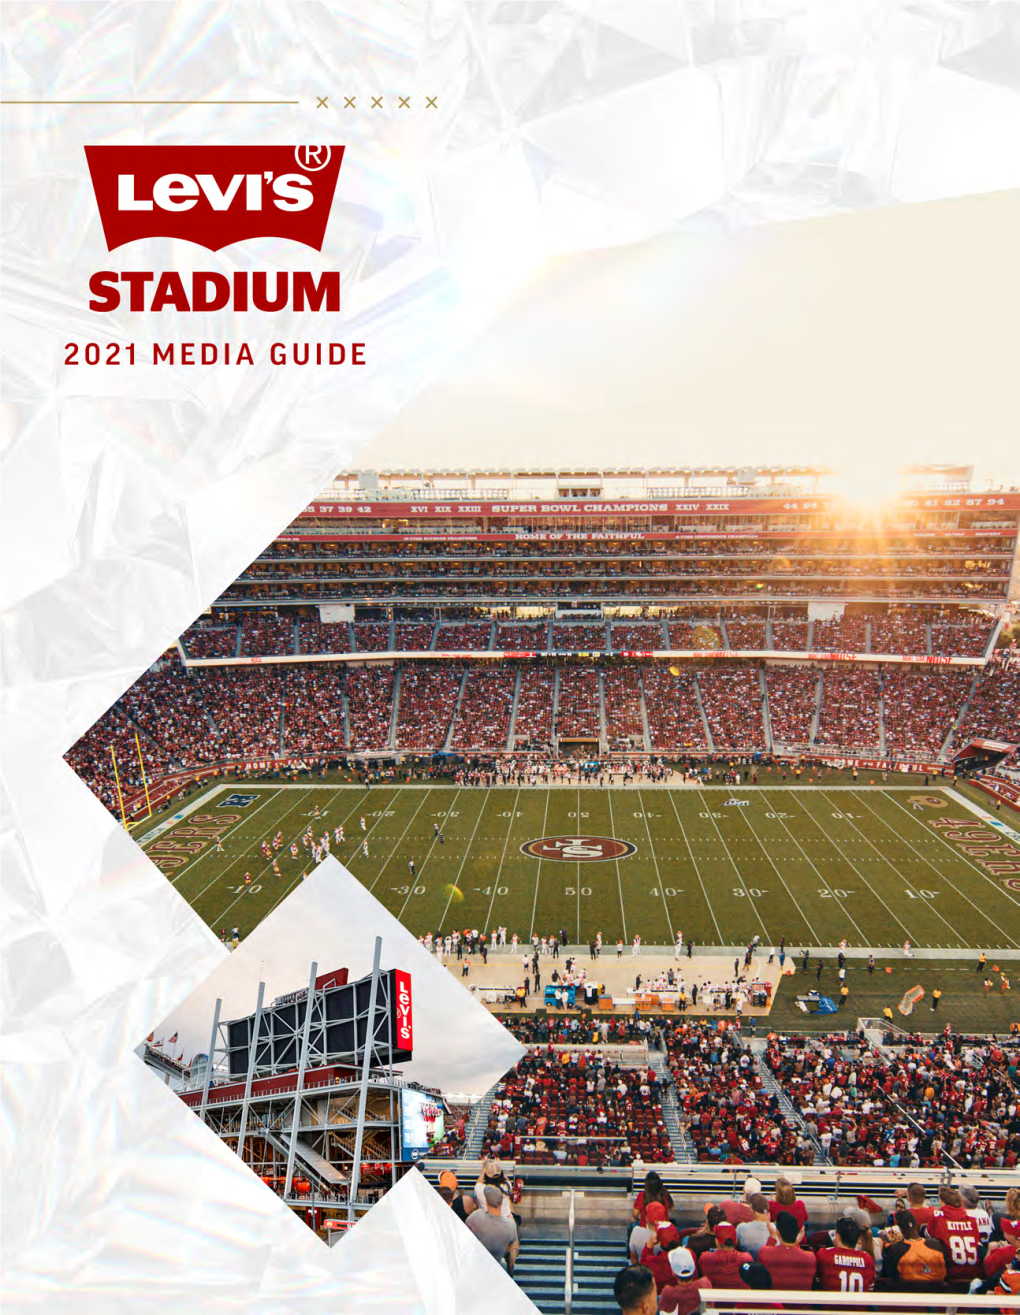 Levis-Stadium-2021-Media-Guide-1